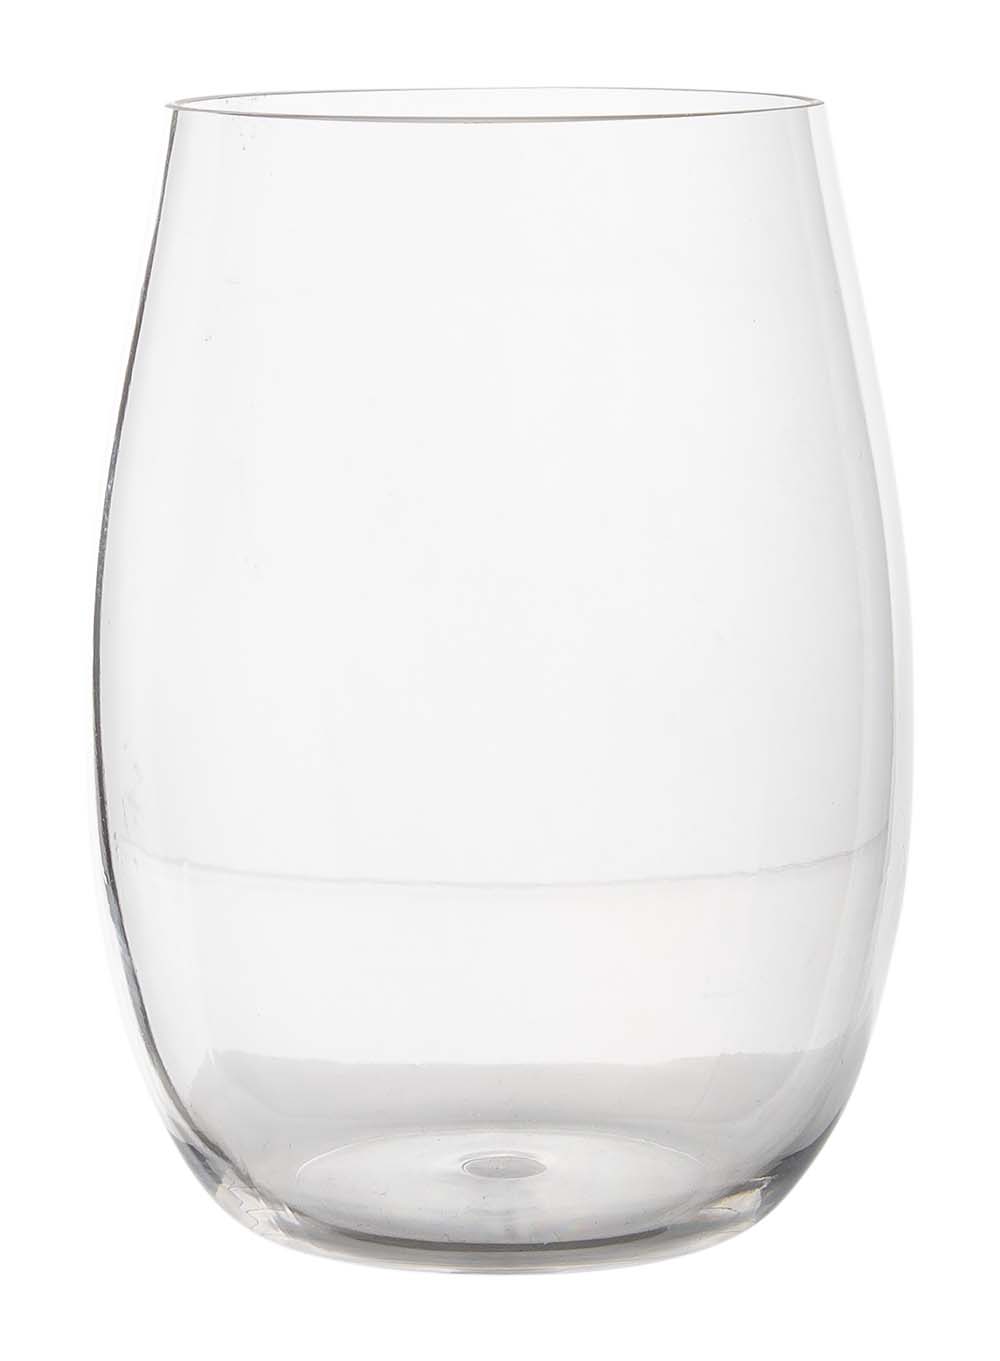 6915180 Een waterglas uit de Linea line collectie. Vrijwel onbreekbaar door hoogwaardig Tritan materiaal. Bestaat uit een set van 2 stuks. Zeer gemakkelijk te reinigen en langdurig te gebruiken, wat het glas erg duurzaam maakt. Daarnaast is het waterglas erg lichtgewicht en krasbestendig. Inhoud: 450 ml.